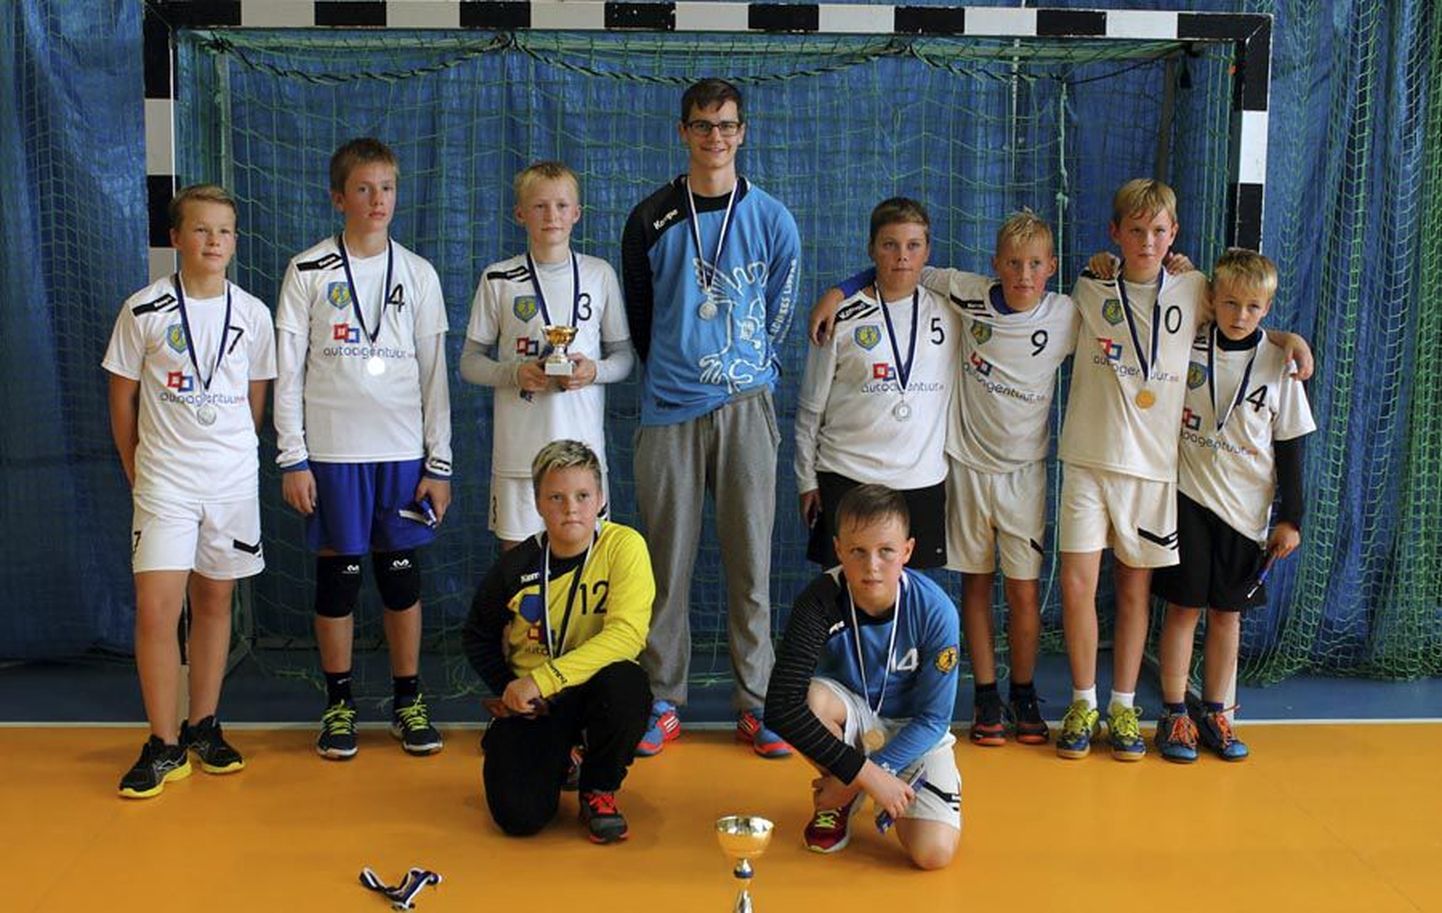 Viljandi spordikooli alla 12-aastaste noormeeste käsipallivõistkond võitles vanema koolivenna Raiko Roosna (keskel) juhendamisel rahvusvahelisel turniiril Põlvas välja teise koha.